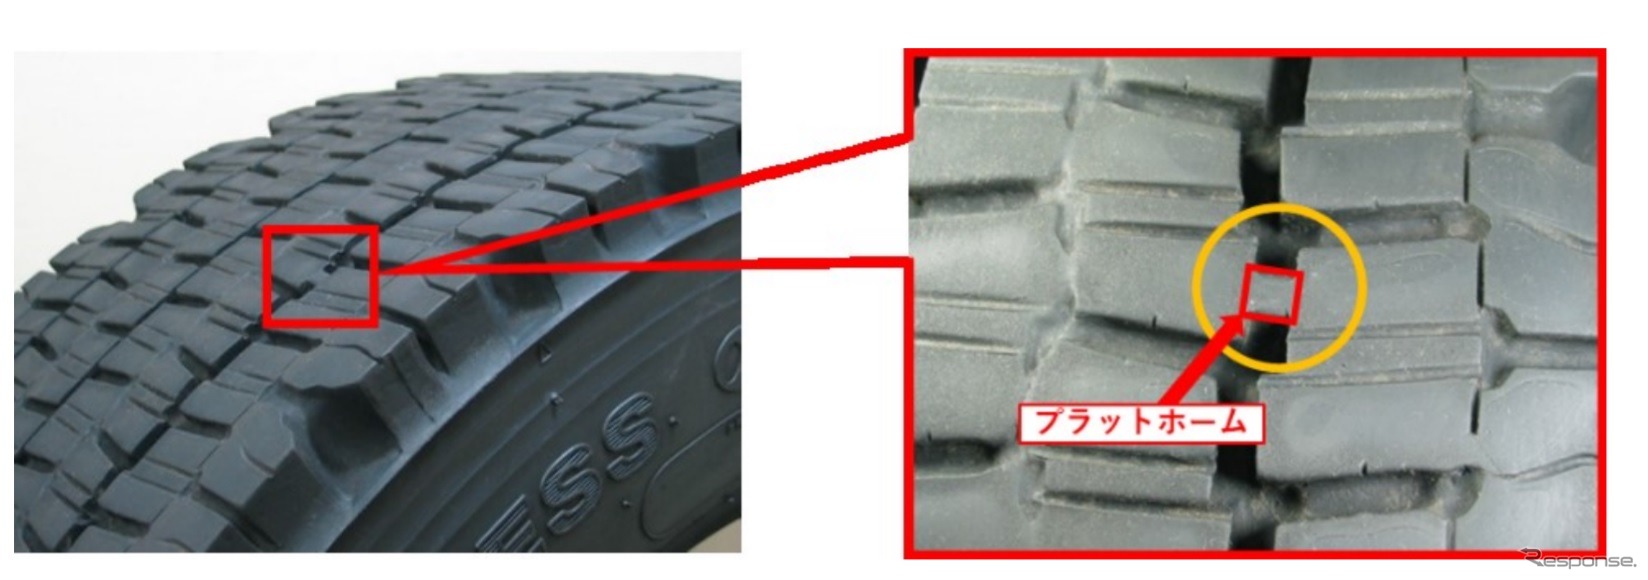 タイヤの使用限度の目安となる溝の深さを確認できるプラットフォーム